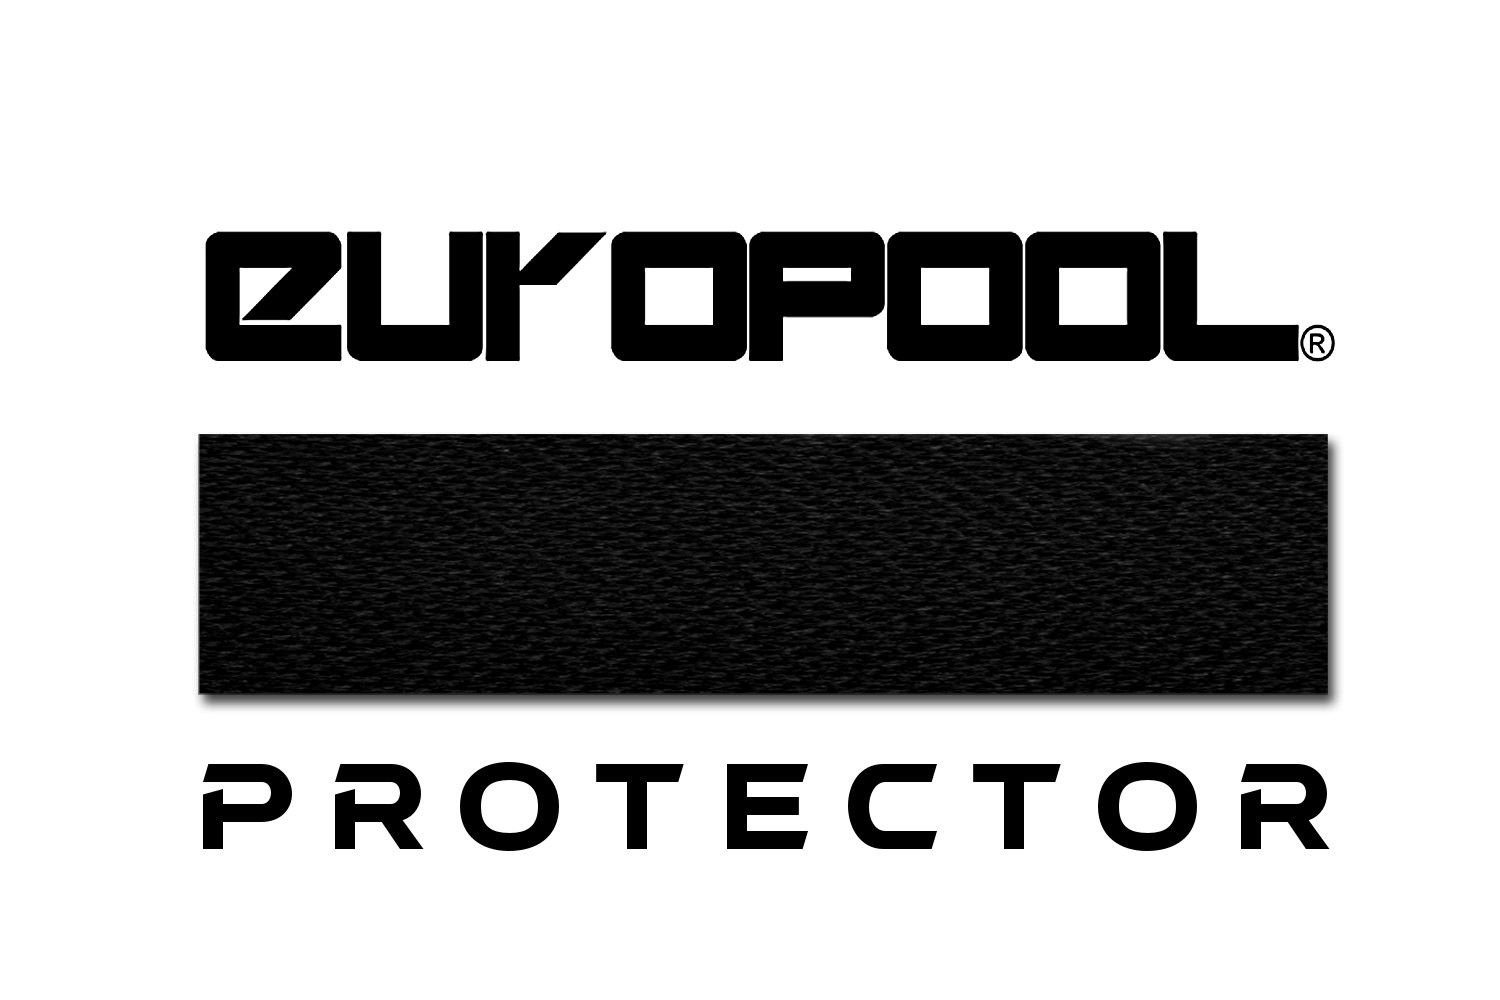 Sukno bilardowe EUROPOOL Black Protector